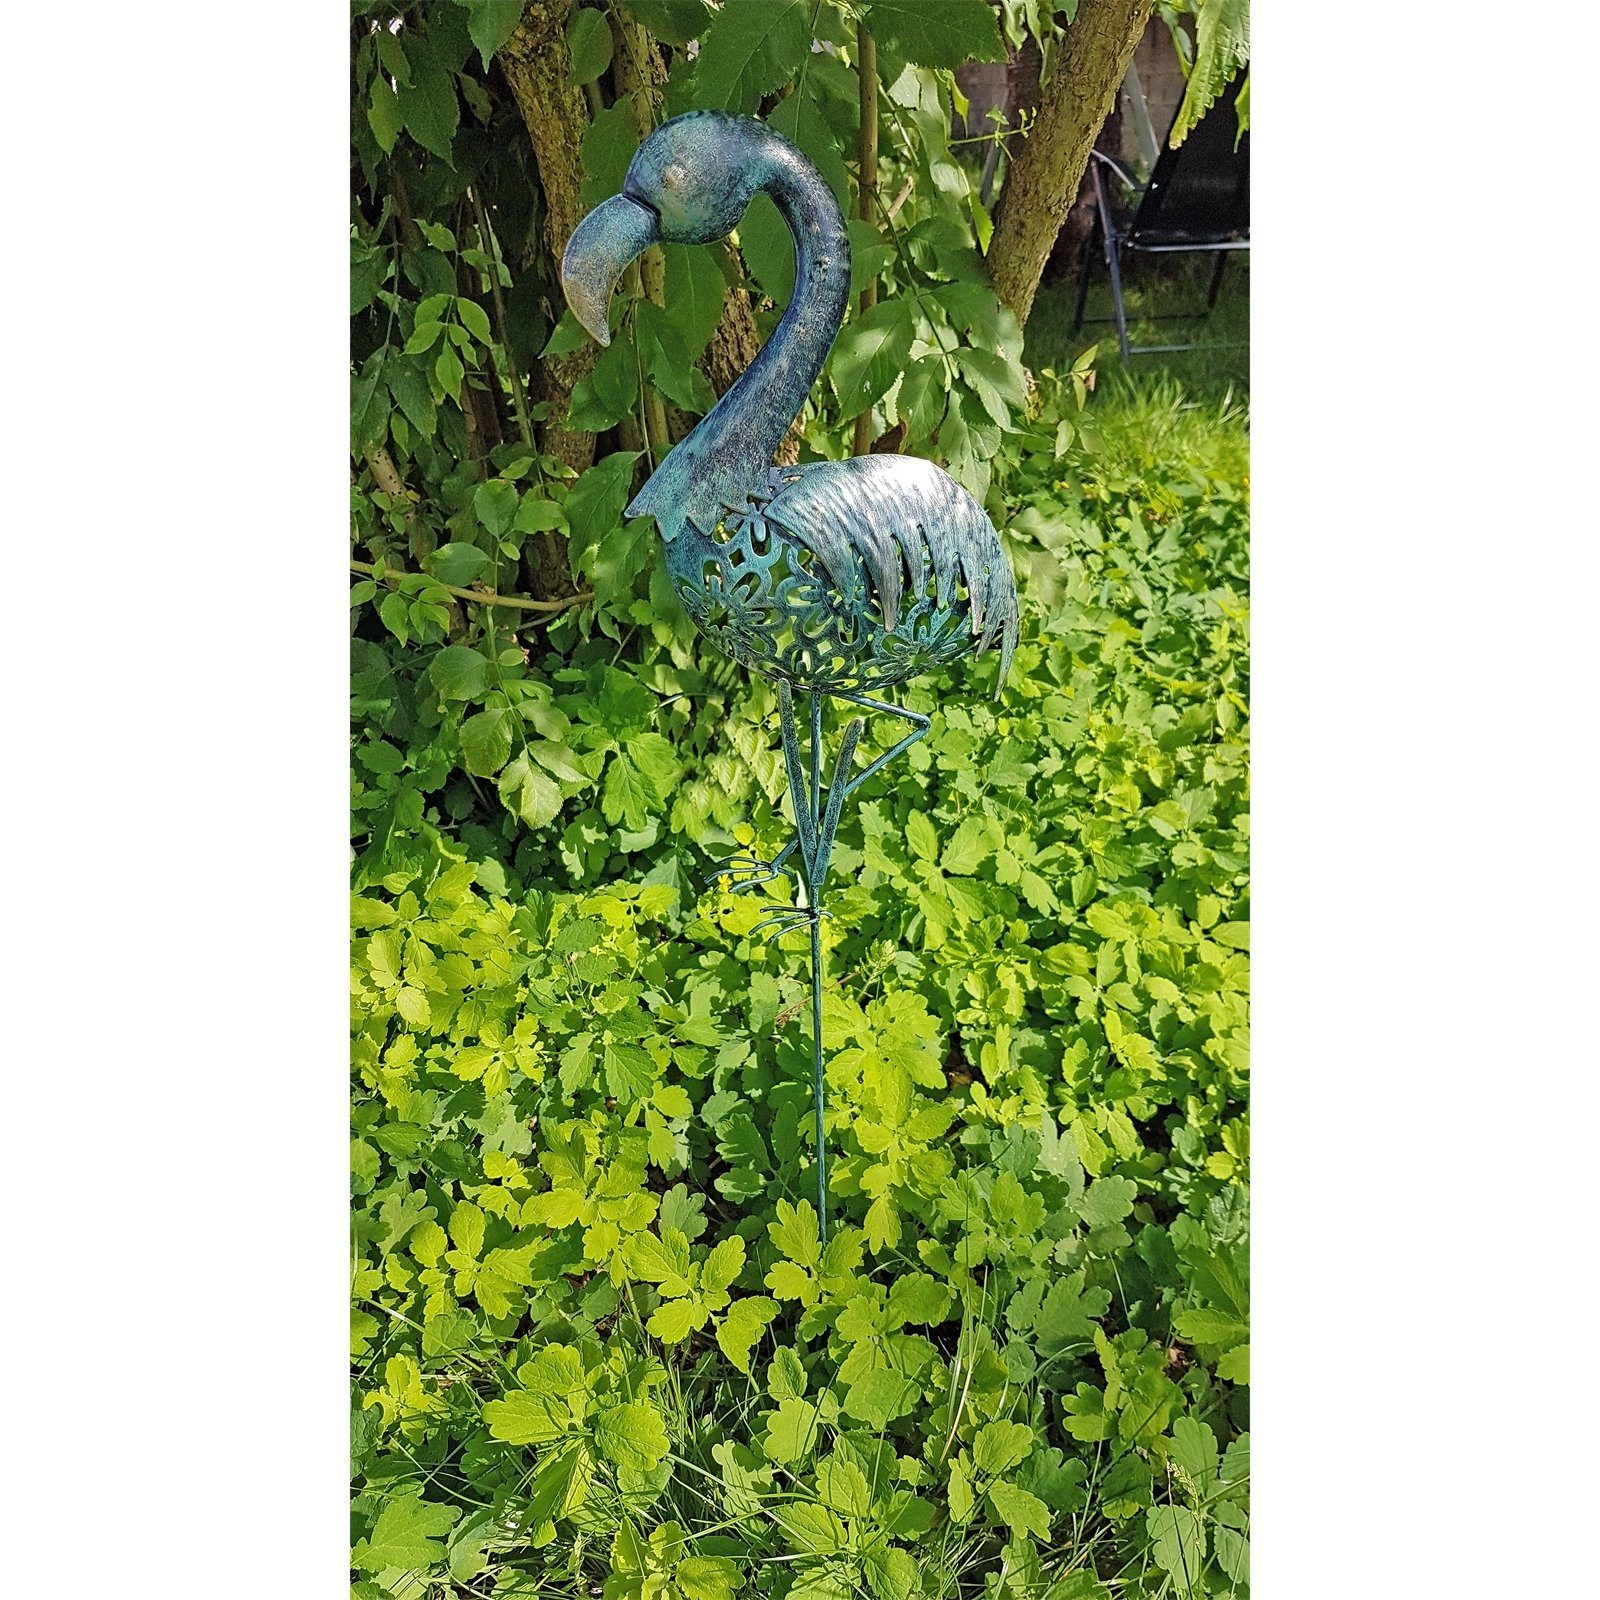 HTI-Living Gartenfigur (1 Gartenstecker Gartendkoration Flamingo, St)